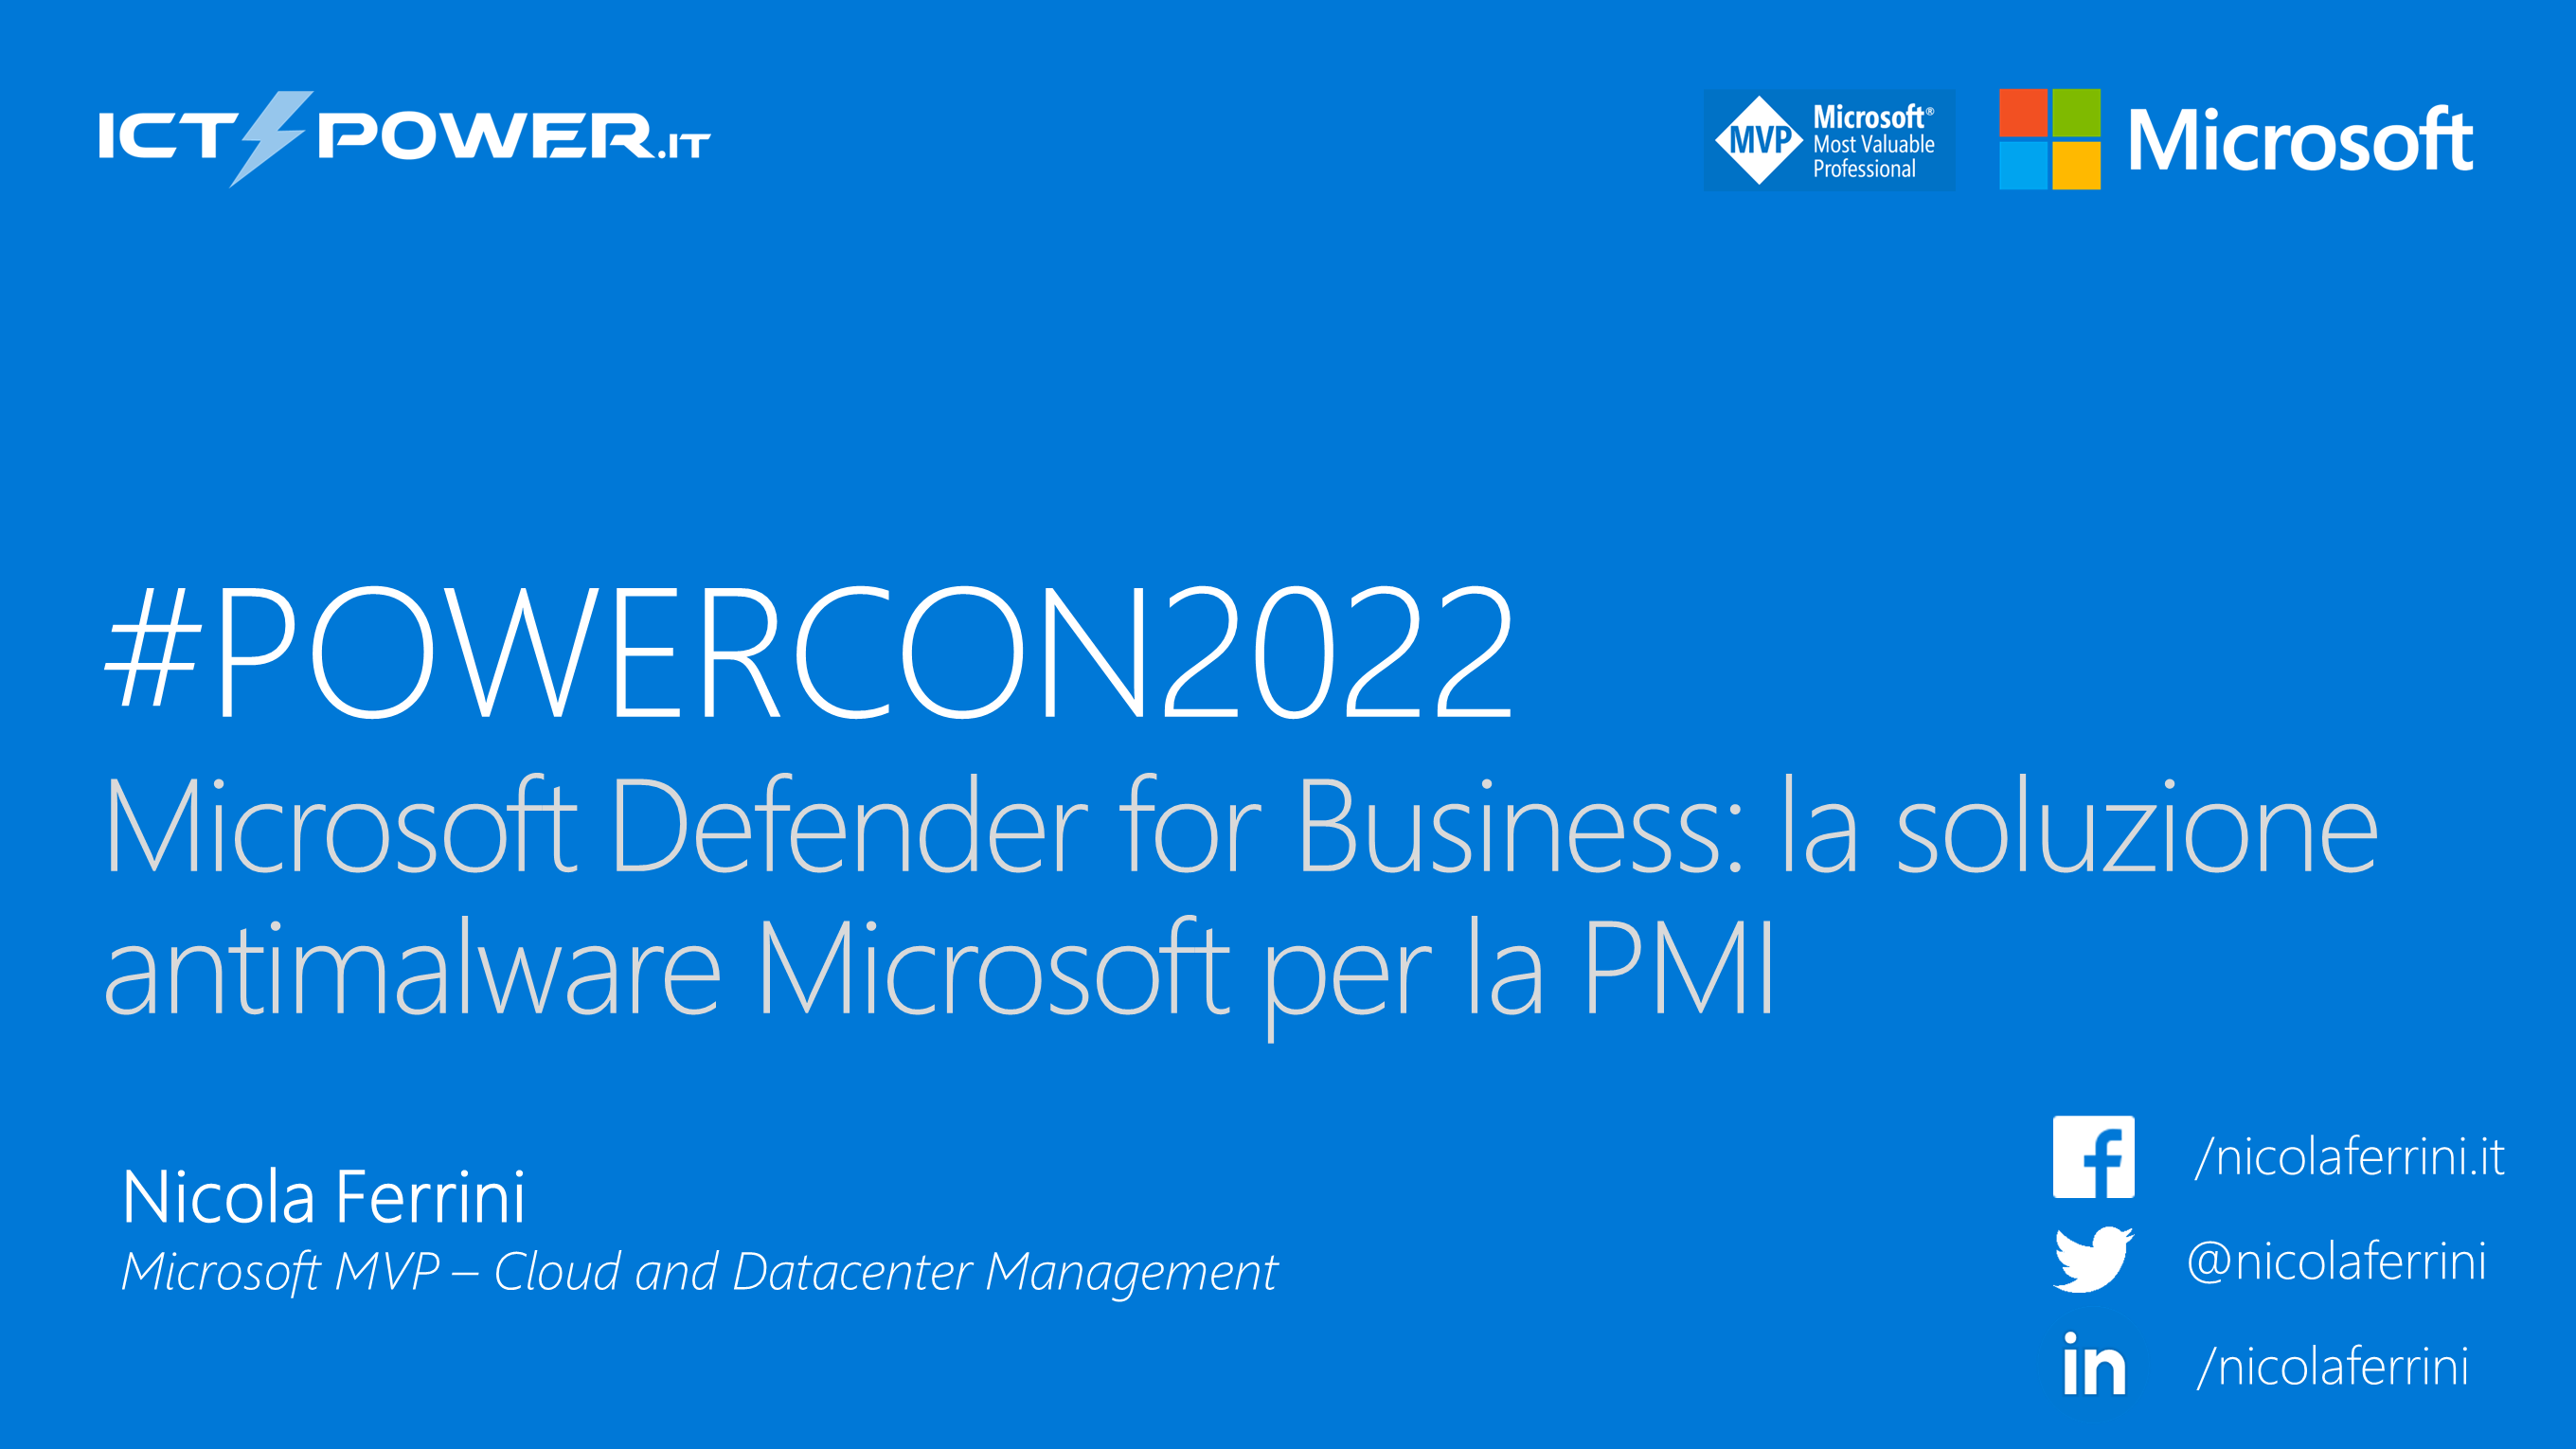 Nicola Ferrini – Microsoft Defender for Business – la soluzione antimalware Microsoft per la PMI